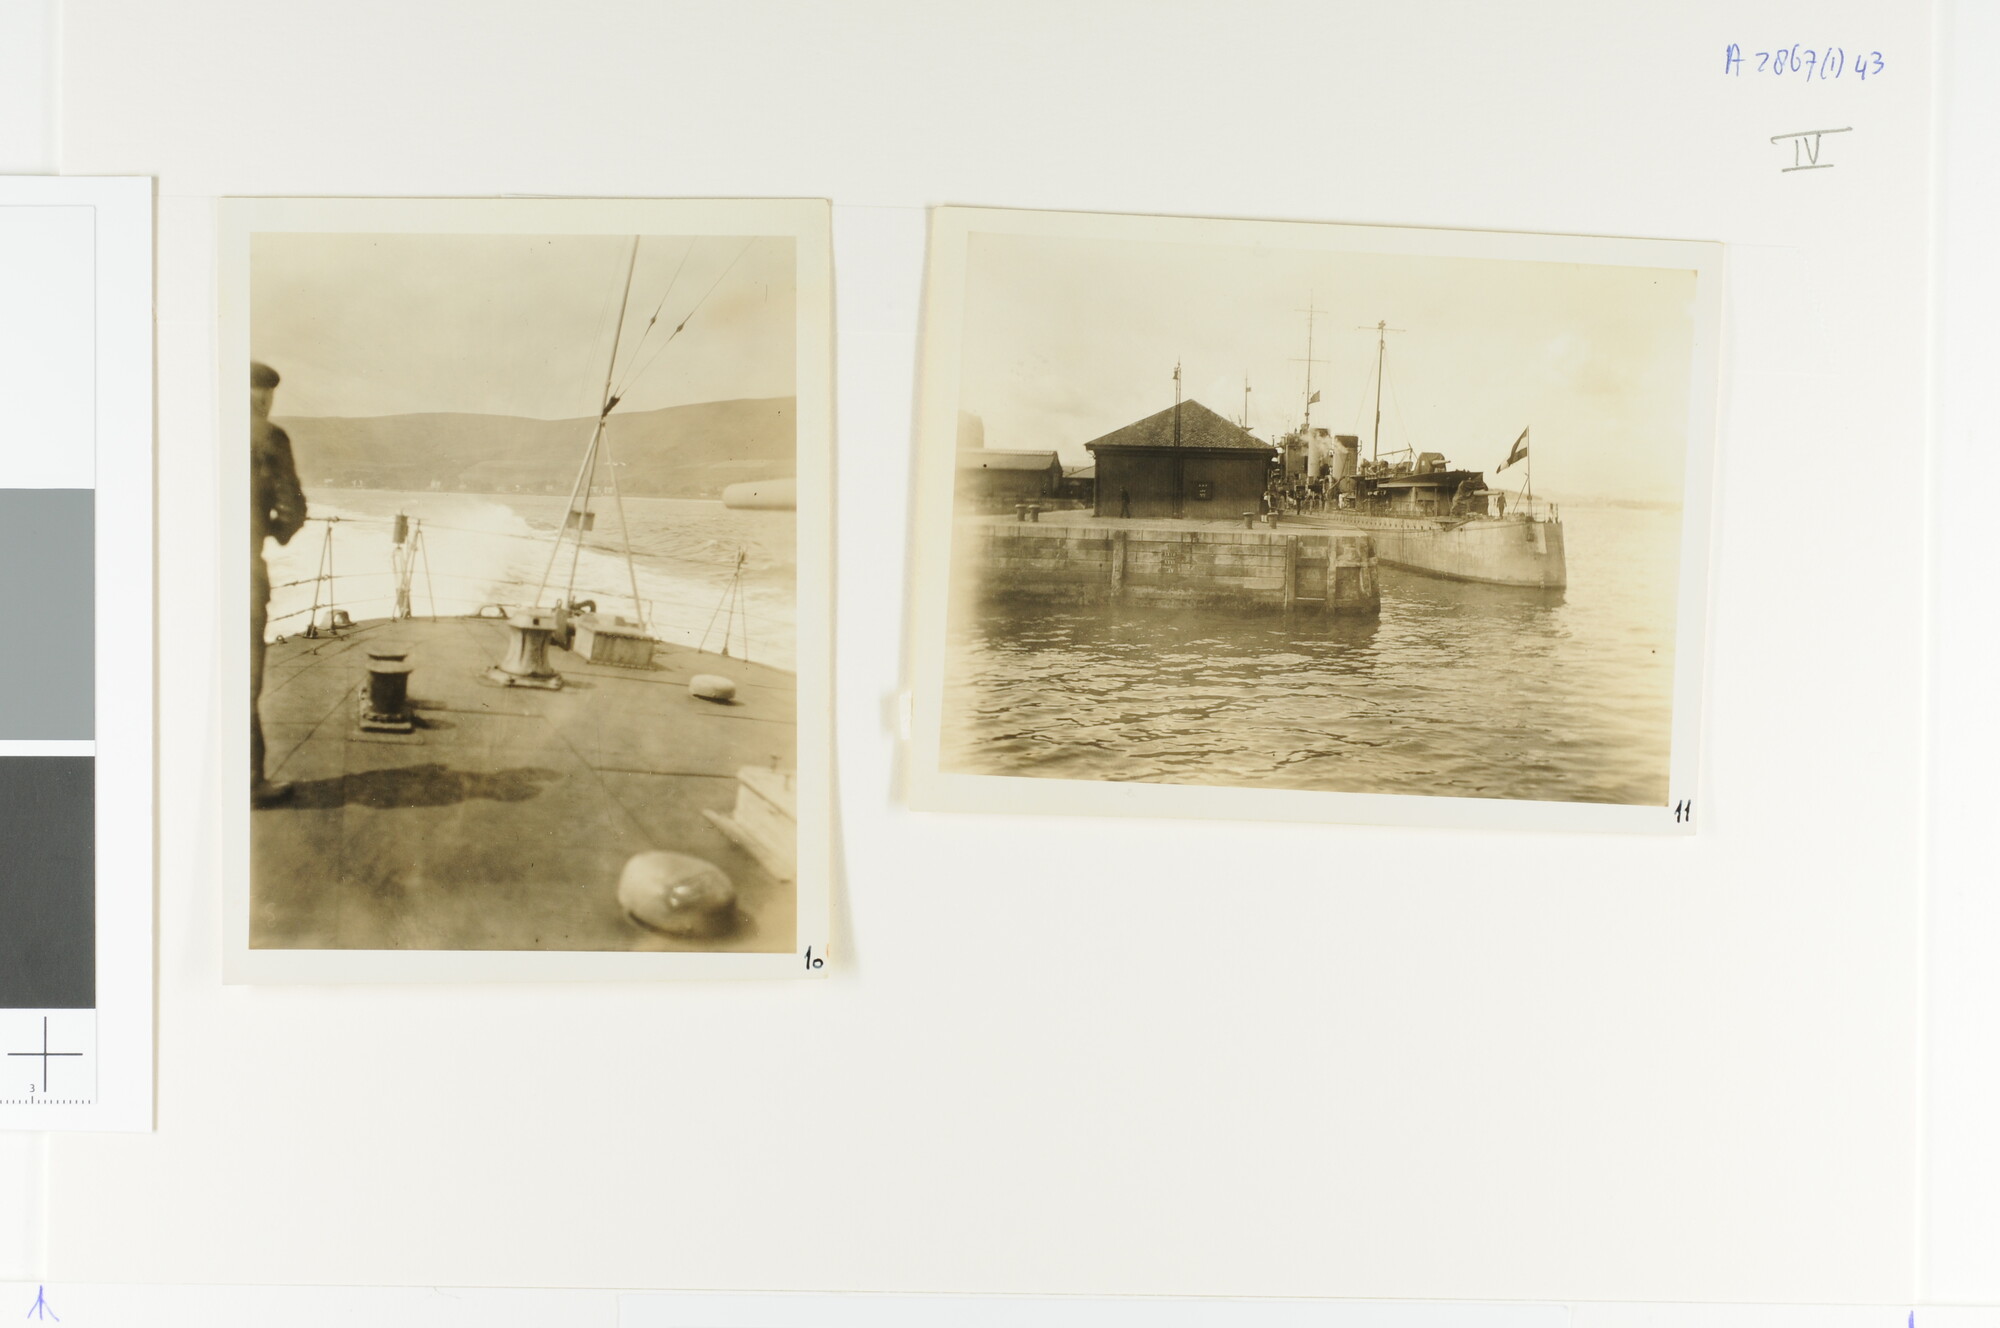 A.2867(01)043; Foto's van de proefvaart van de torpedobootjager Hr.Ms. 'Banckert'; fotoreportage